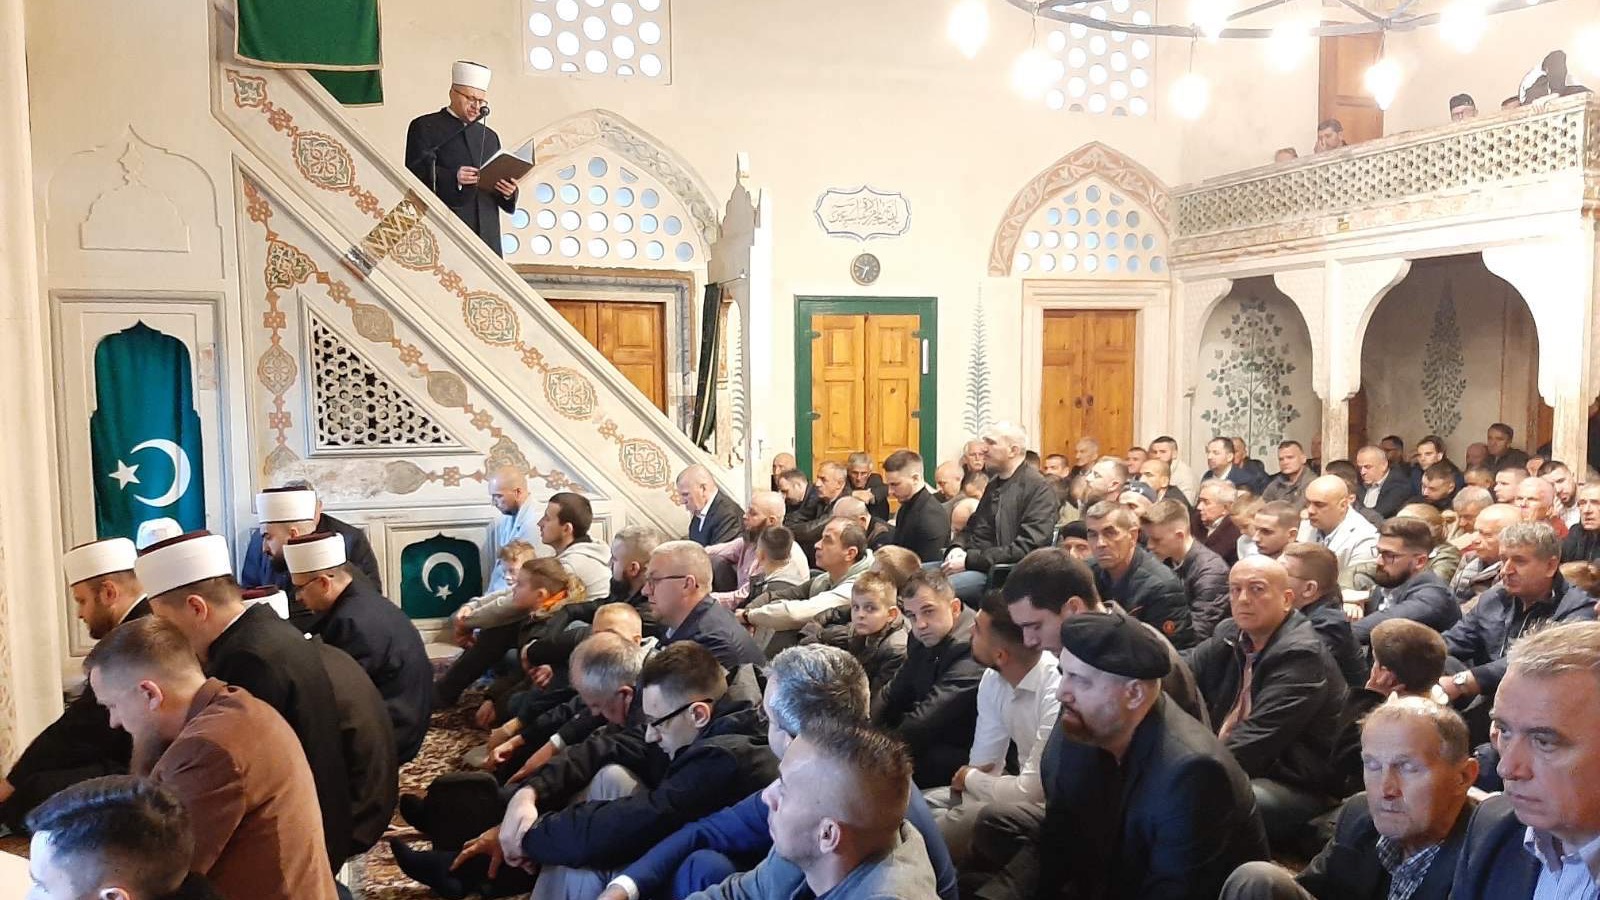 Mostarski muftija u bajramskoj hutbi pozvao vjernike da bodre jedni druge i da unose pozitivnu energiju u međuljudske odnose